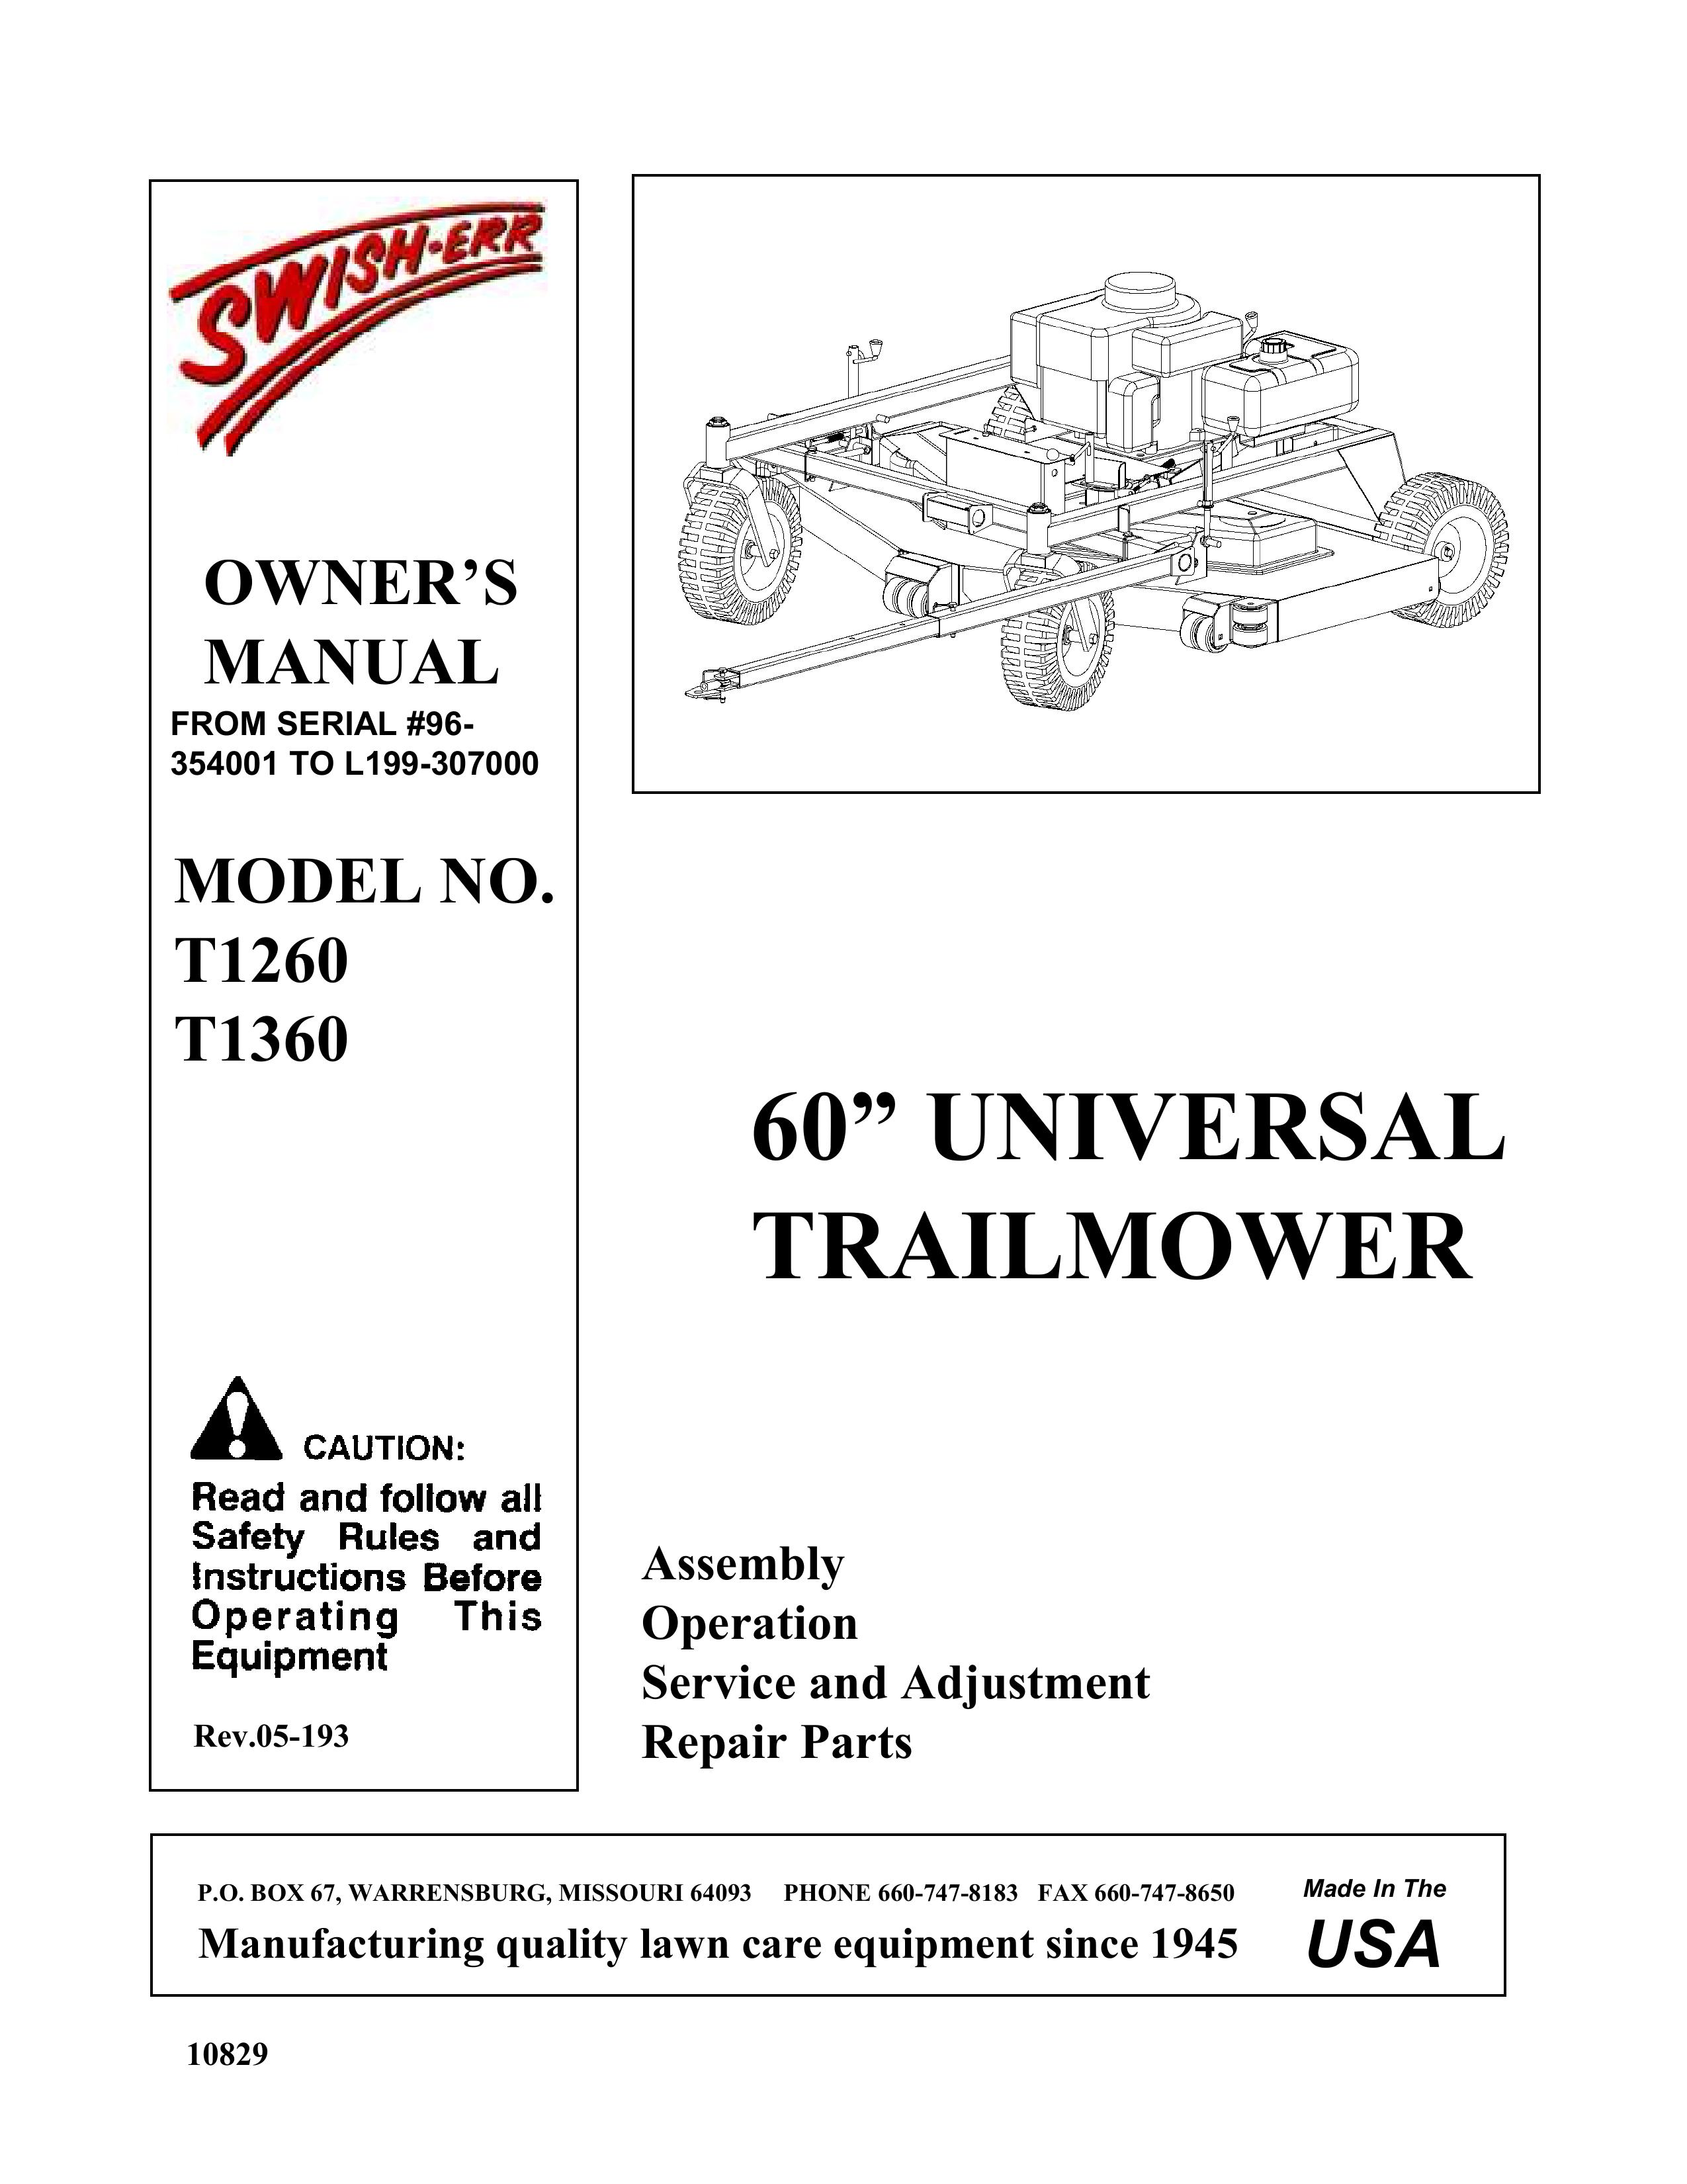 Swisher T1360, T1260 Lawn Mower User Manual